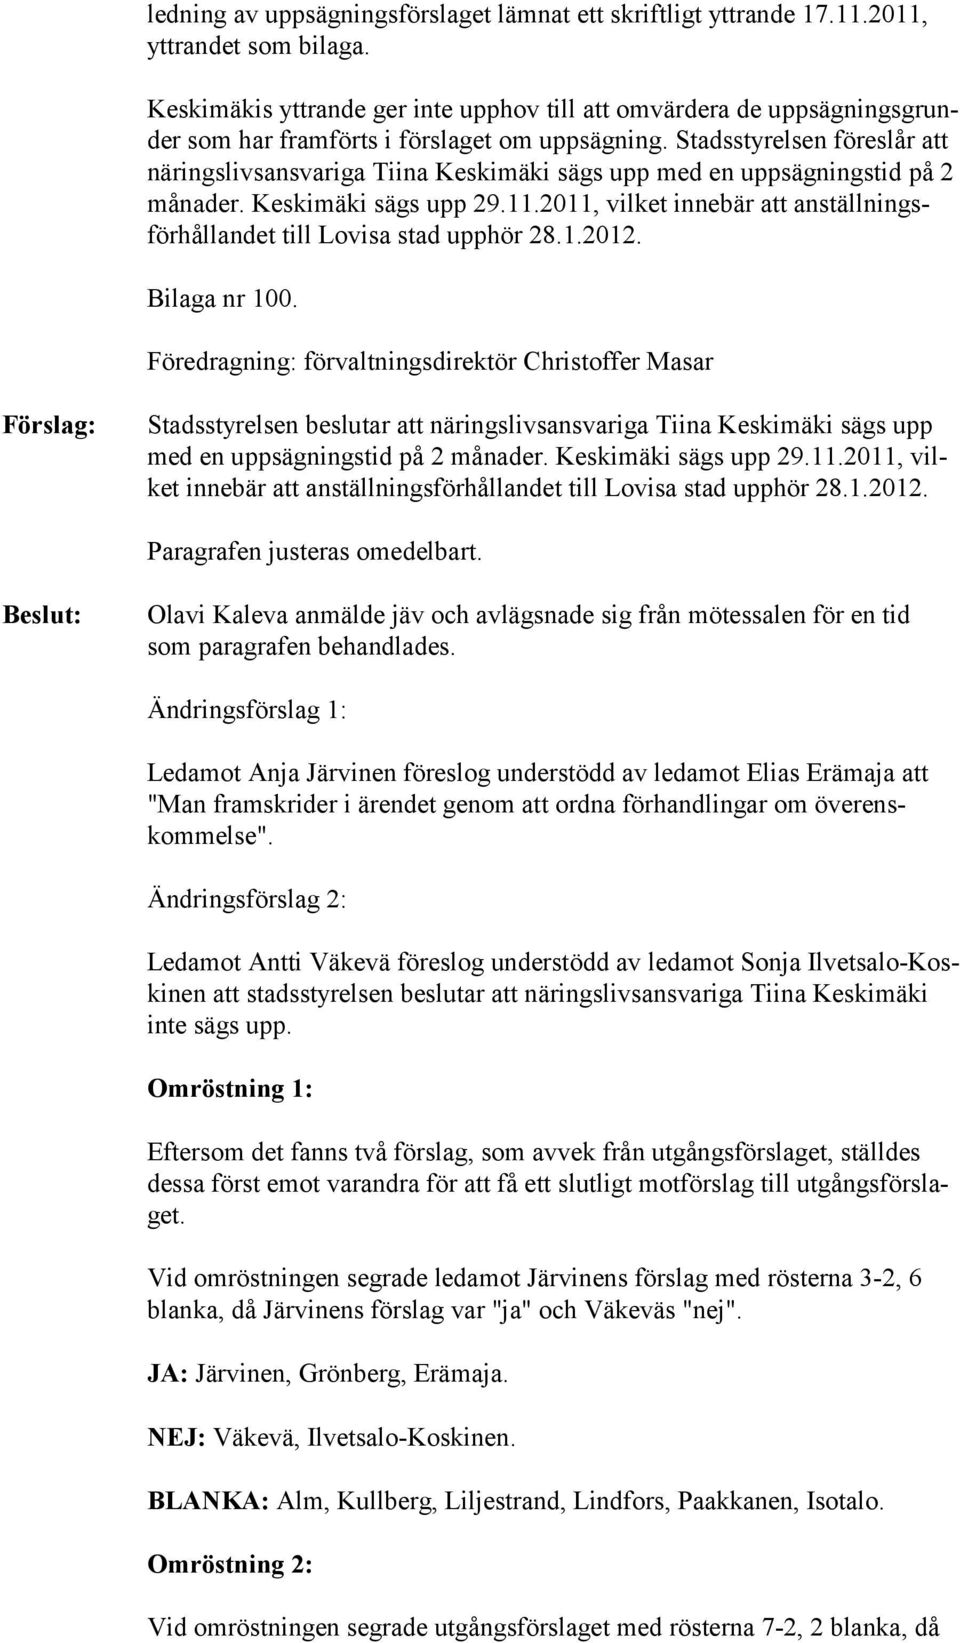 Stadsstyrelsen föreslår att näringsliv sansvariga Tiina Keskimäki sägs upp med en uppsägningstid på 2 månader. Keskimäki sägs upp 29.11.